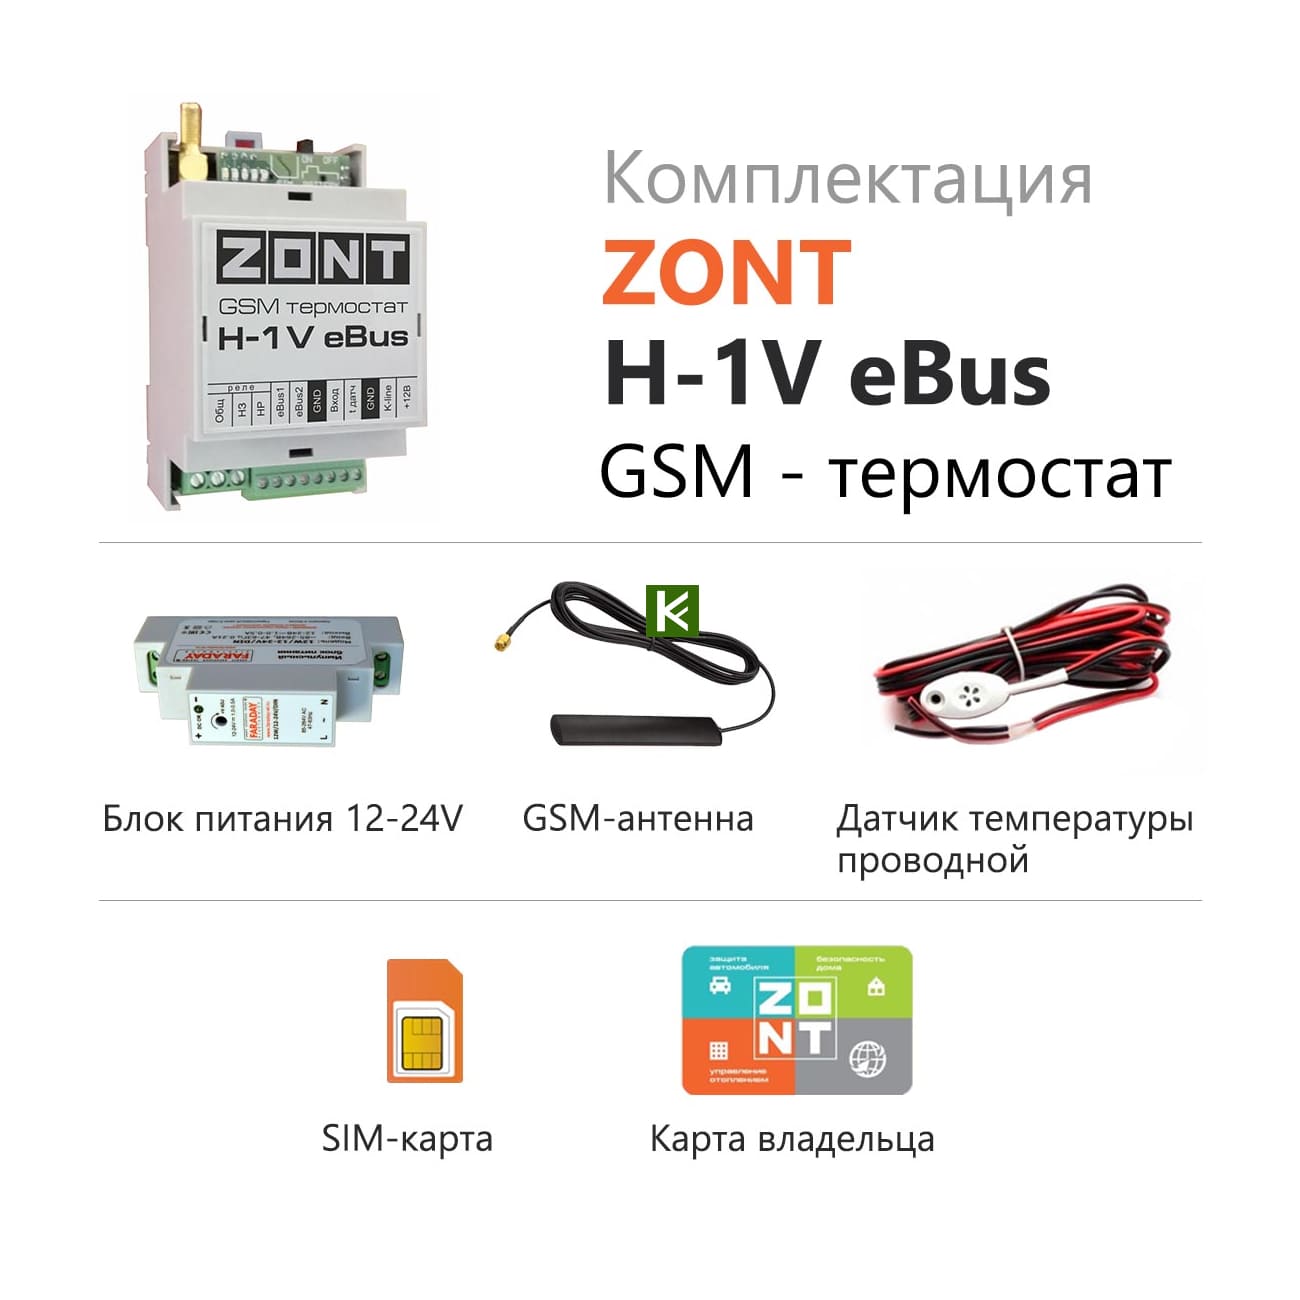 Gsm zont. GSM-термостат Zont h-1. Zont-h1v EBUS GSM-термостат. Блок дистанционного управления котлом GSM-climate Zont h-1v EBUS. Термостат GSM-climate Zont-h1v.